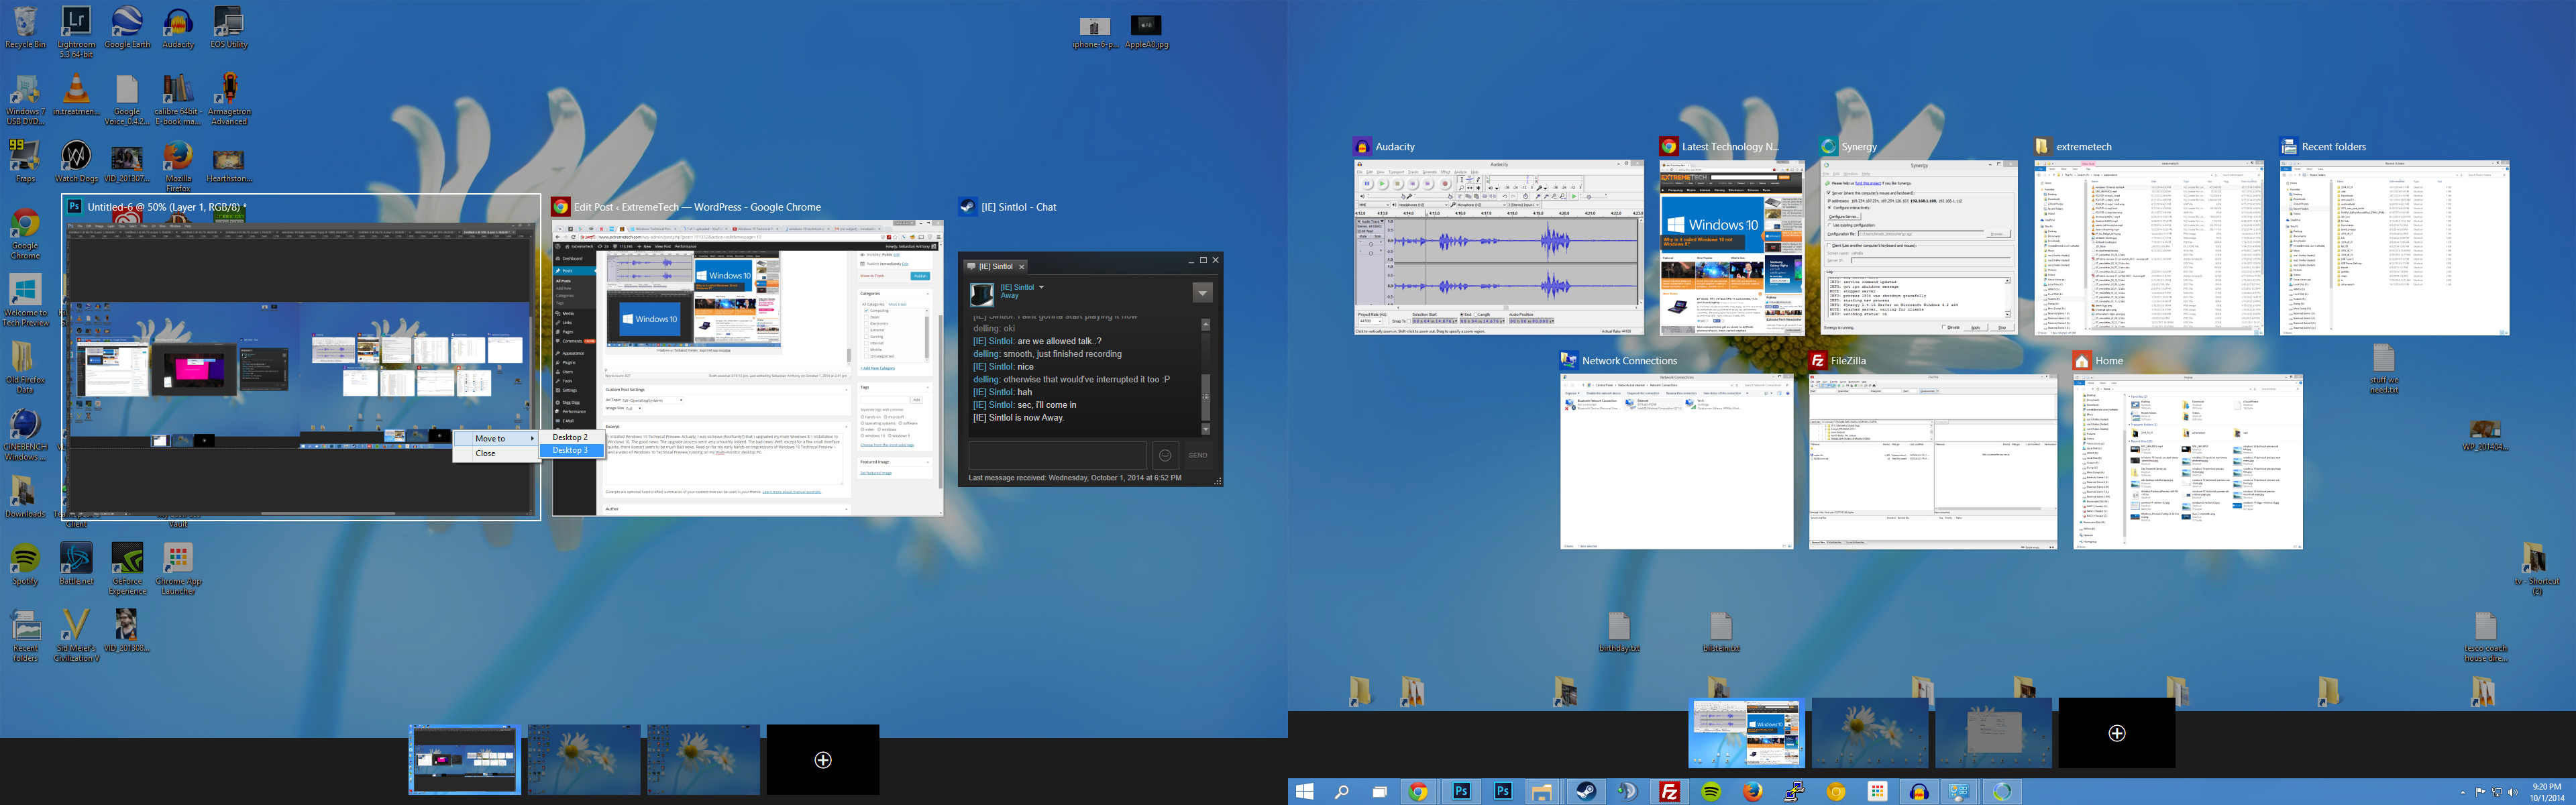 Windows Technical Pre Virtual Desktops Multi Monitor